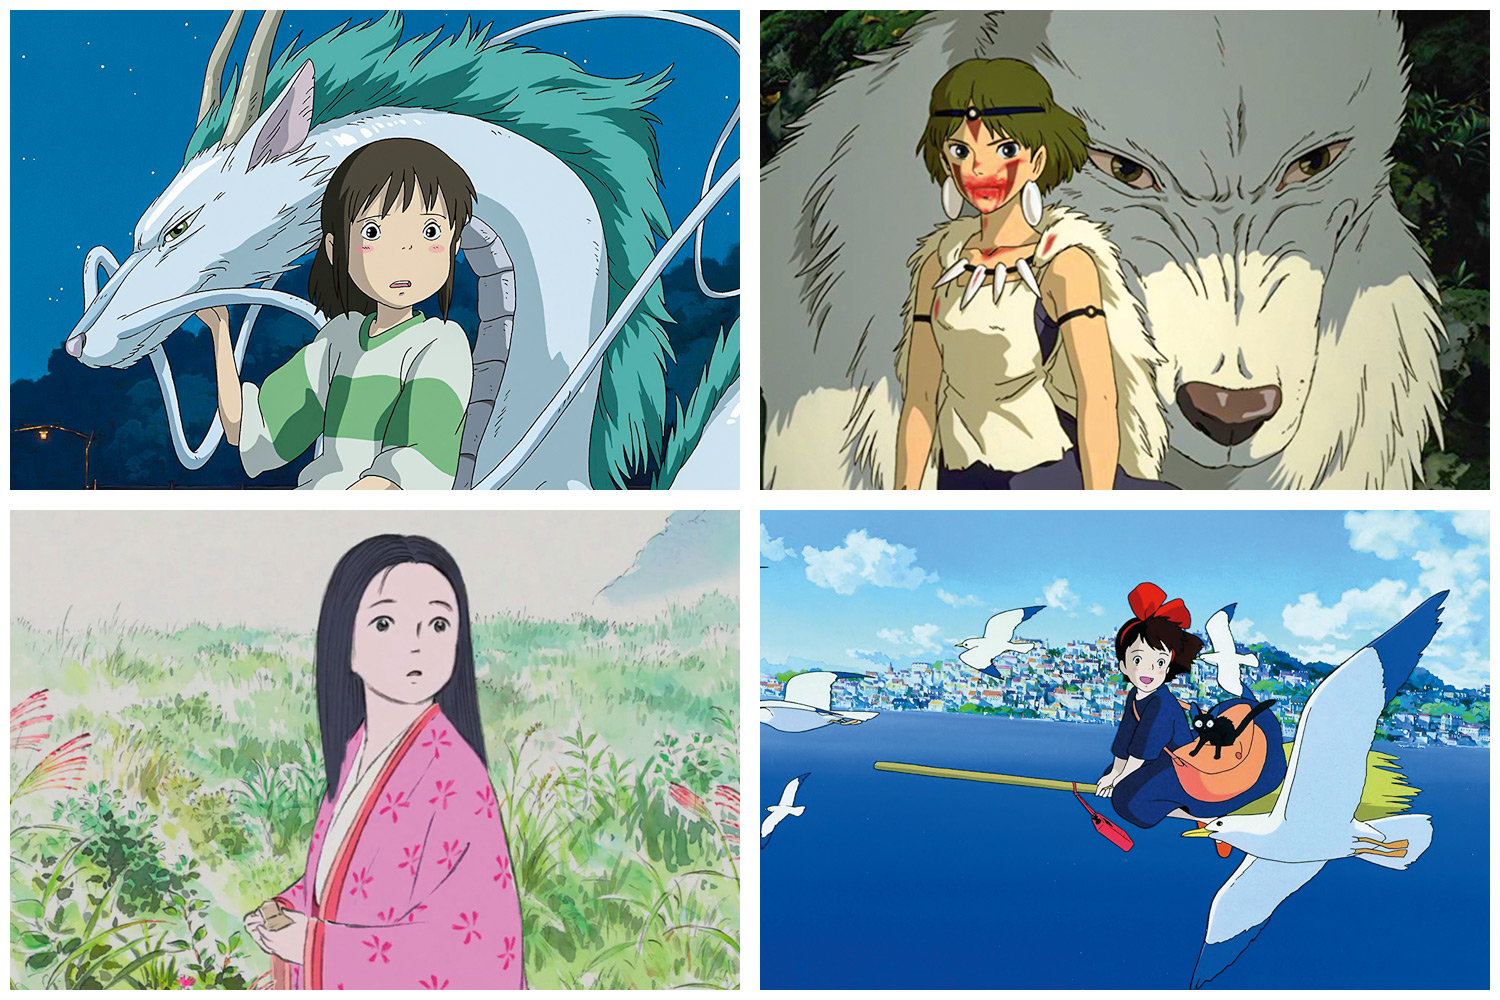 Quais são seus estúdios de animação japonesa favoritos? Animes